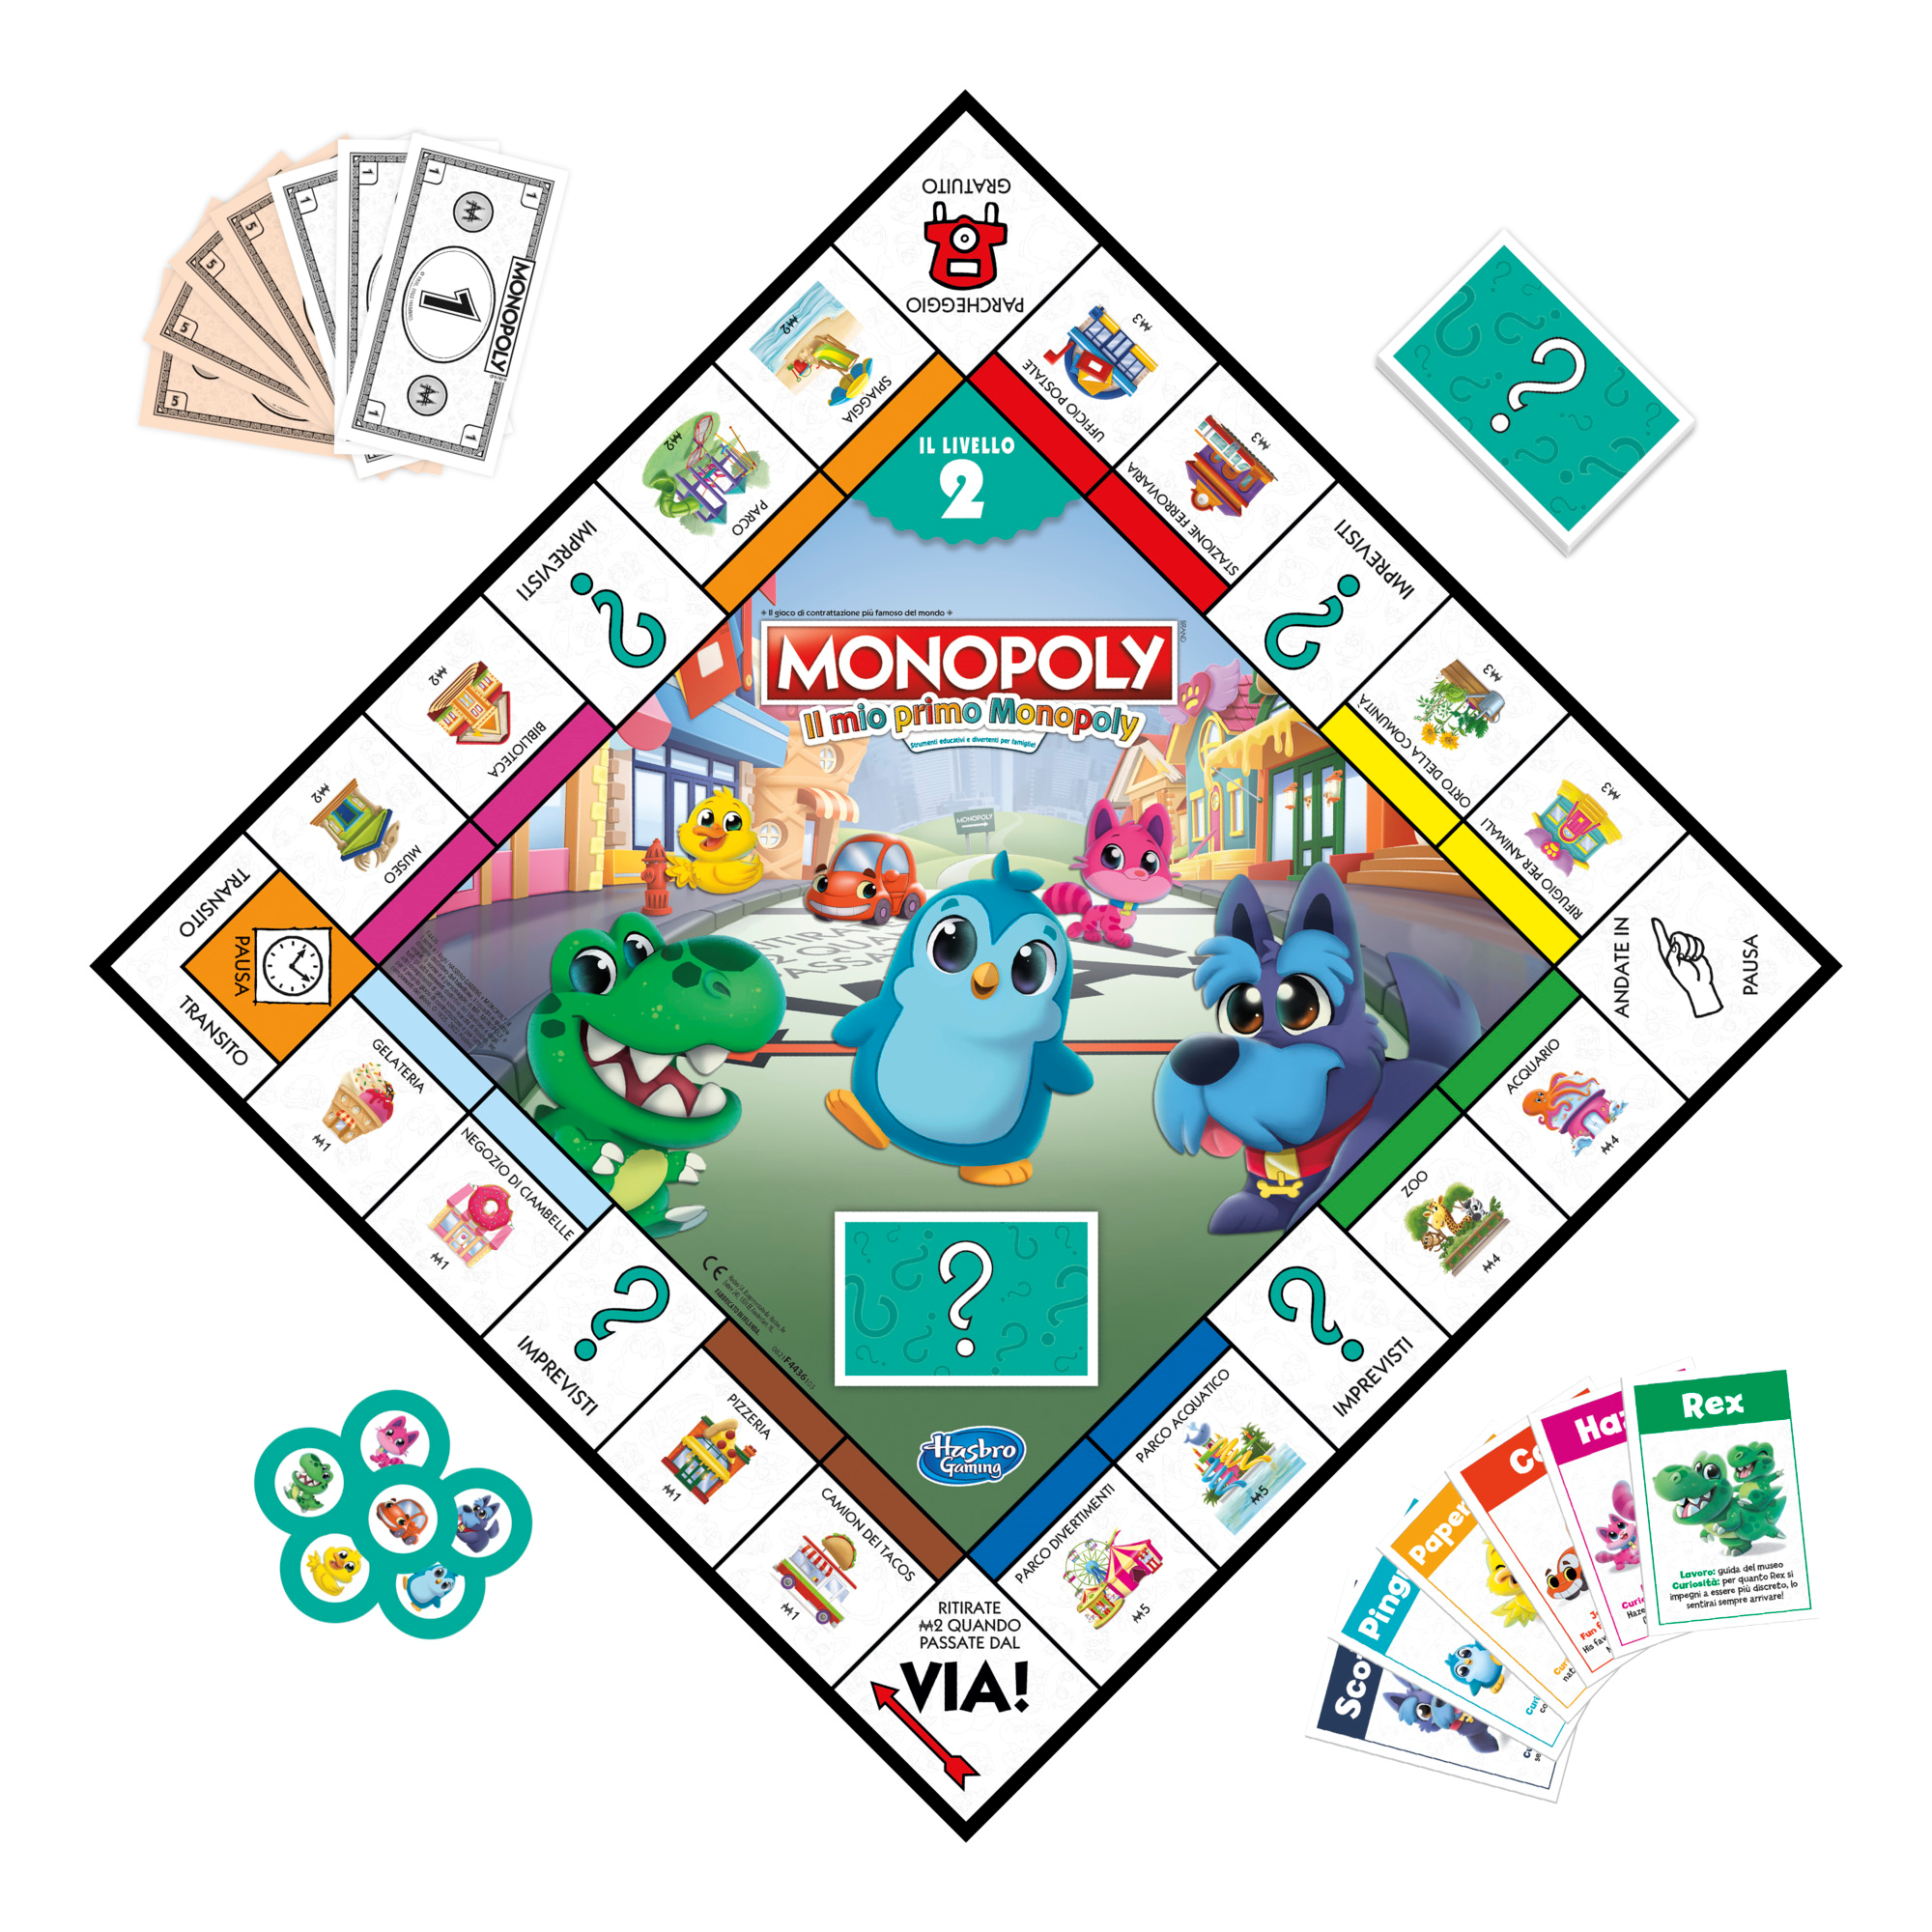 Monopoly: il mio primo monopoly, gioco da tavolo per famiglie, per bambini dai 4 anni in su - HASBRO GAMING, MONOPOLY